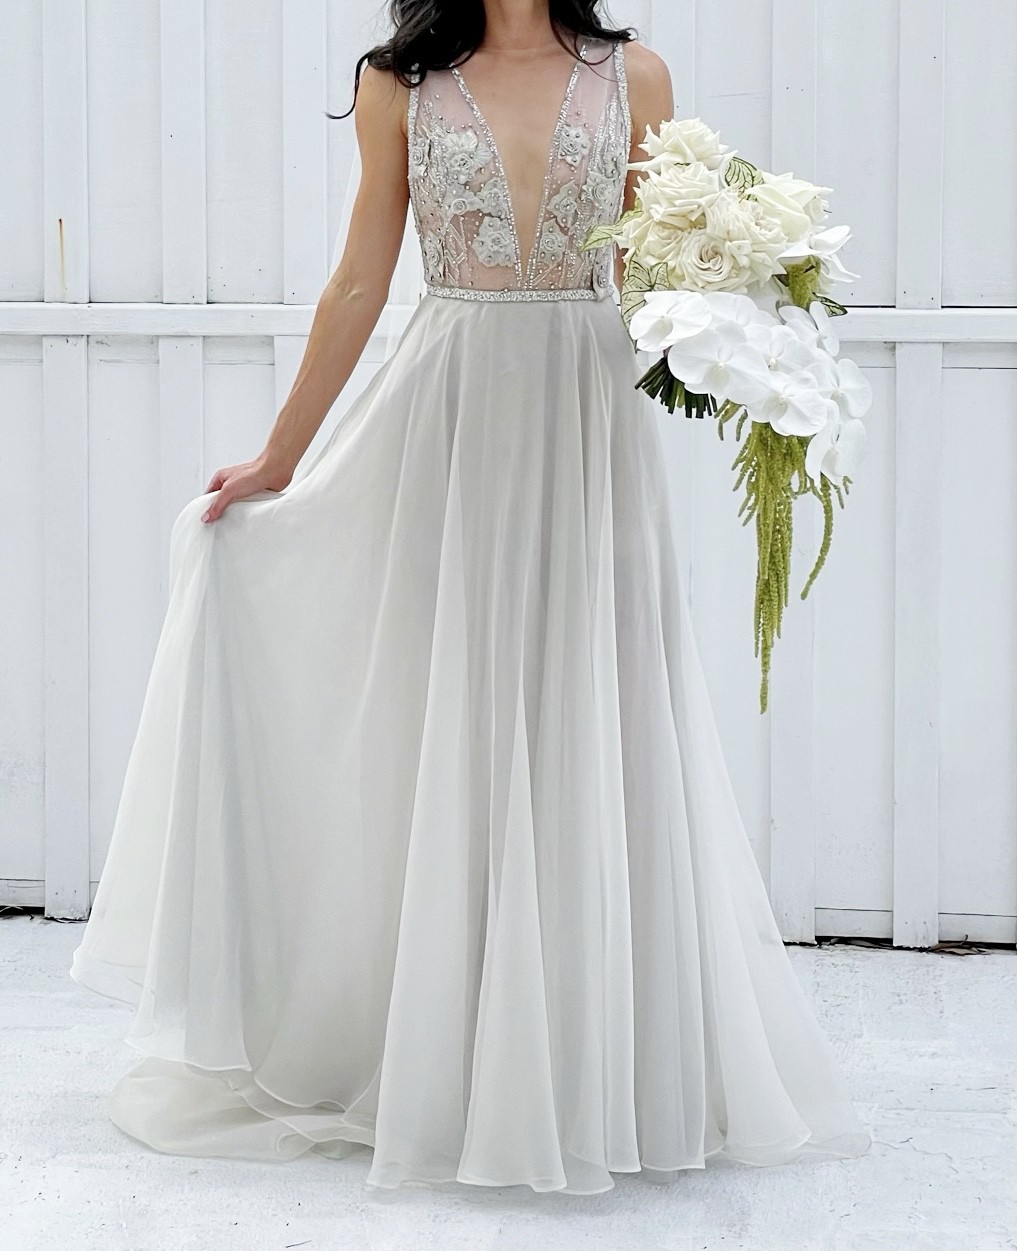 Suzanne Harward Aurora Gown Preloved Wedding Dress Save 78% - Stillwhite